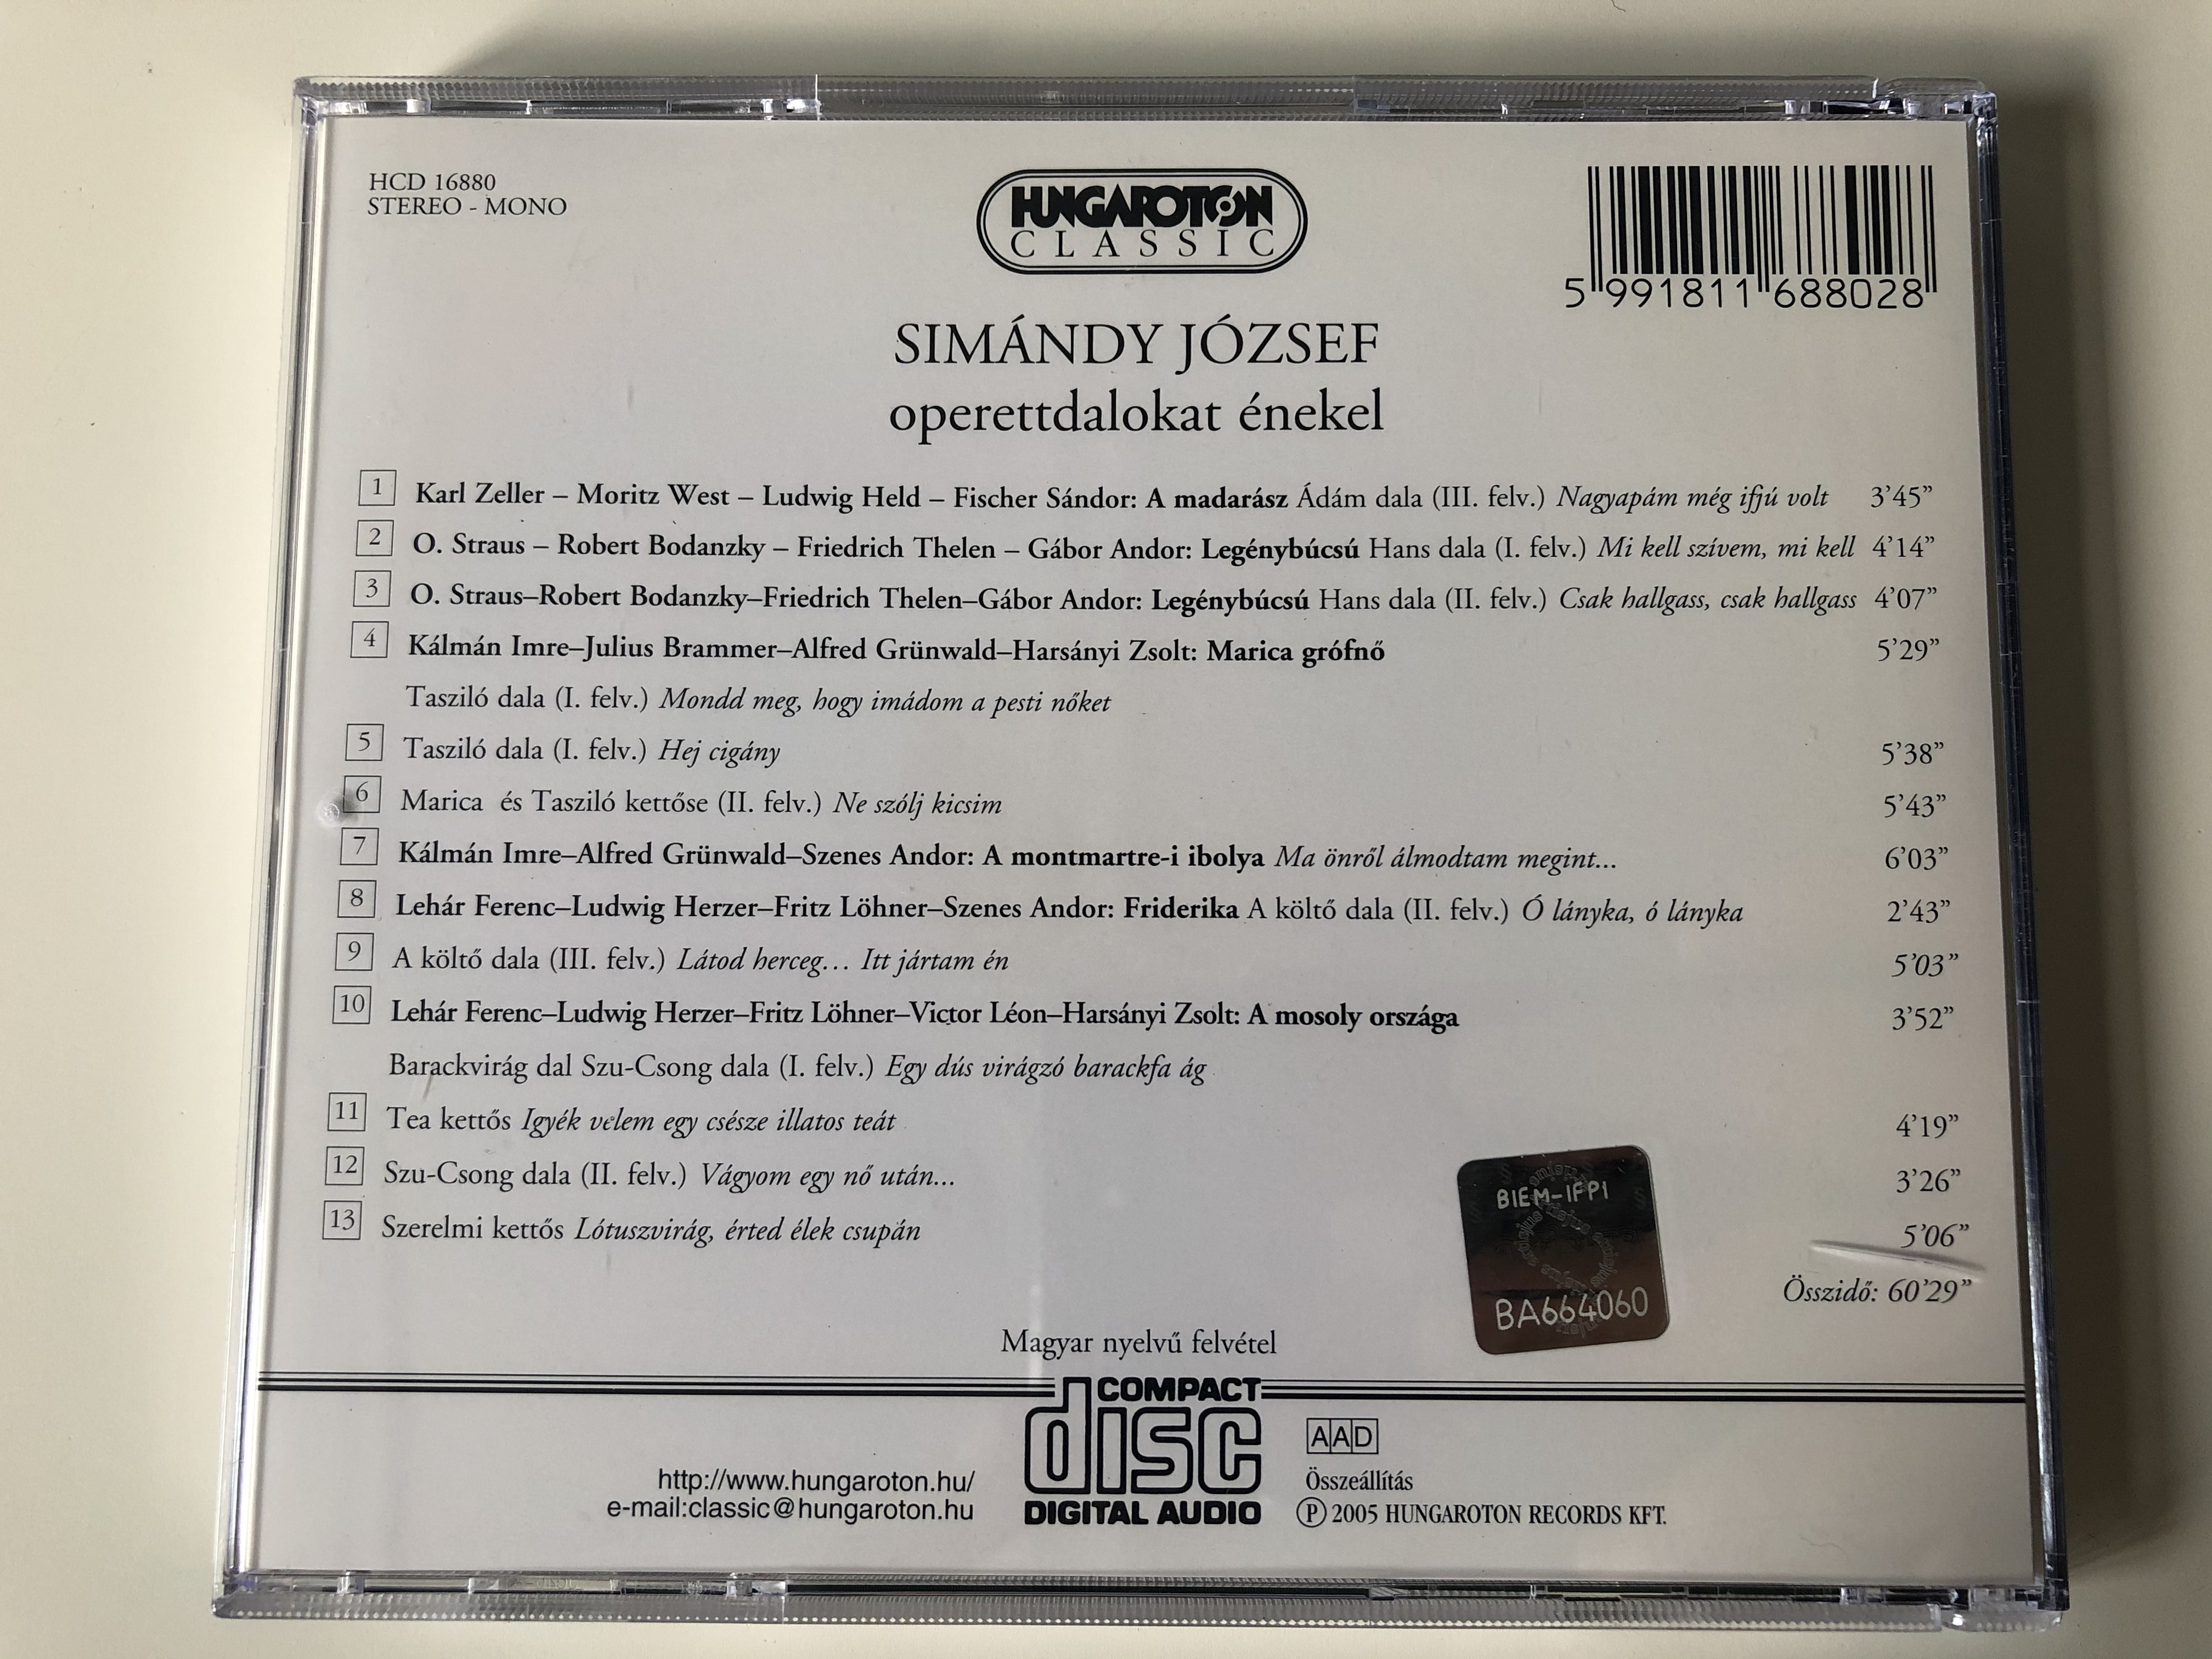 sim-ndy-j-zsef-operettr-szletek-songs-from-operettas-zeller-o.-straus-k-lm-n-leh-r-hungaroton-classic-audio-cd-2005-stereo-mono-hcd-16880-4-.jpg